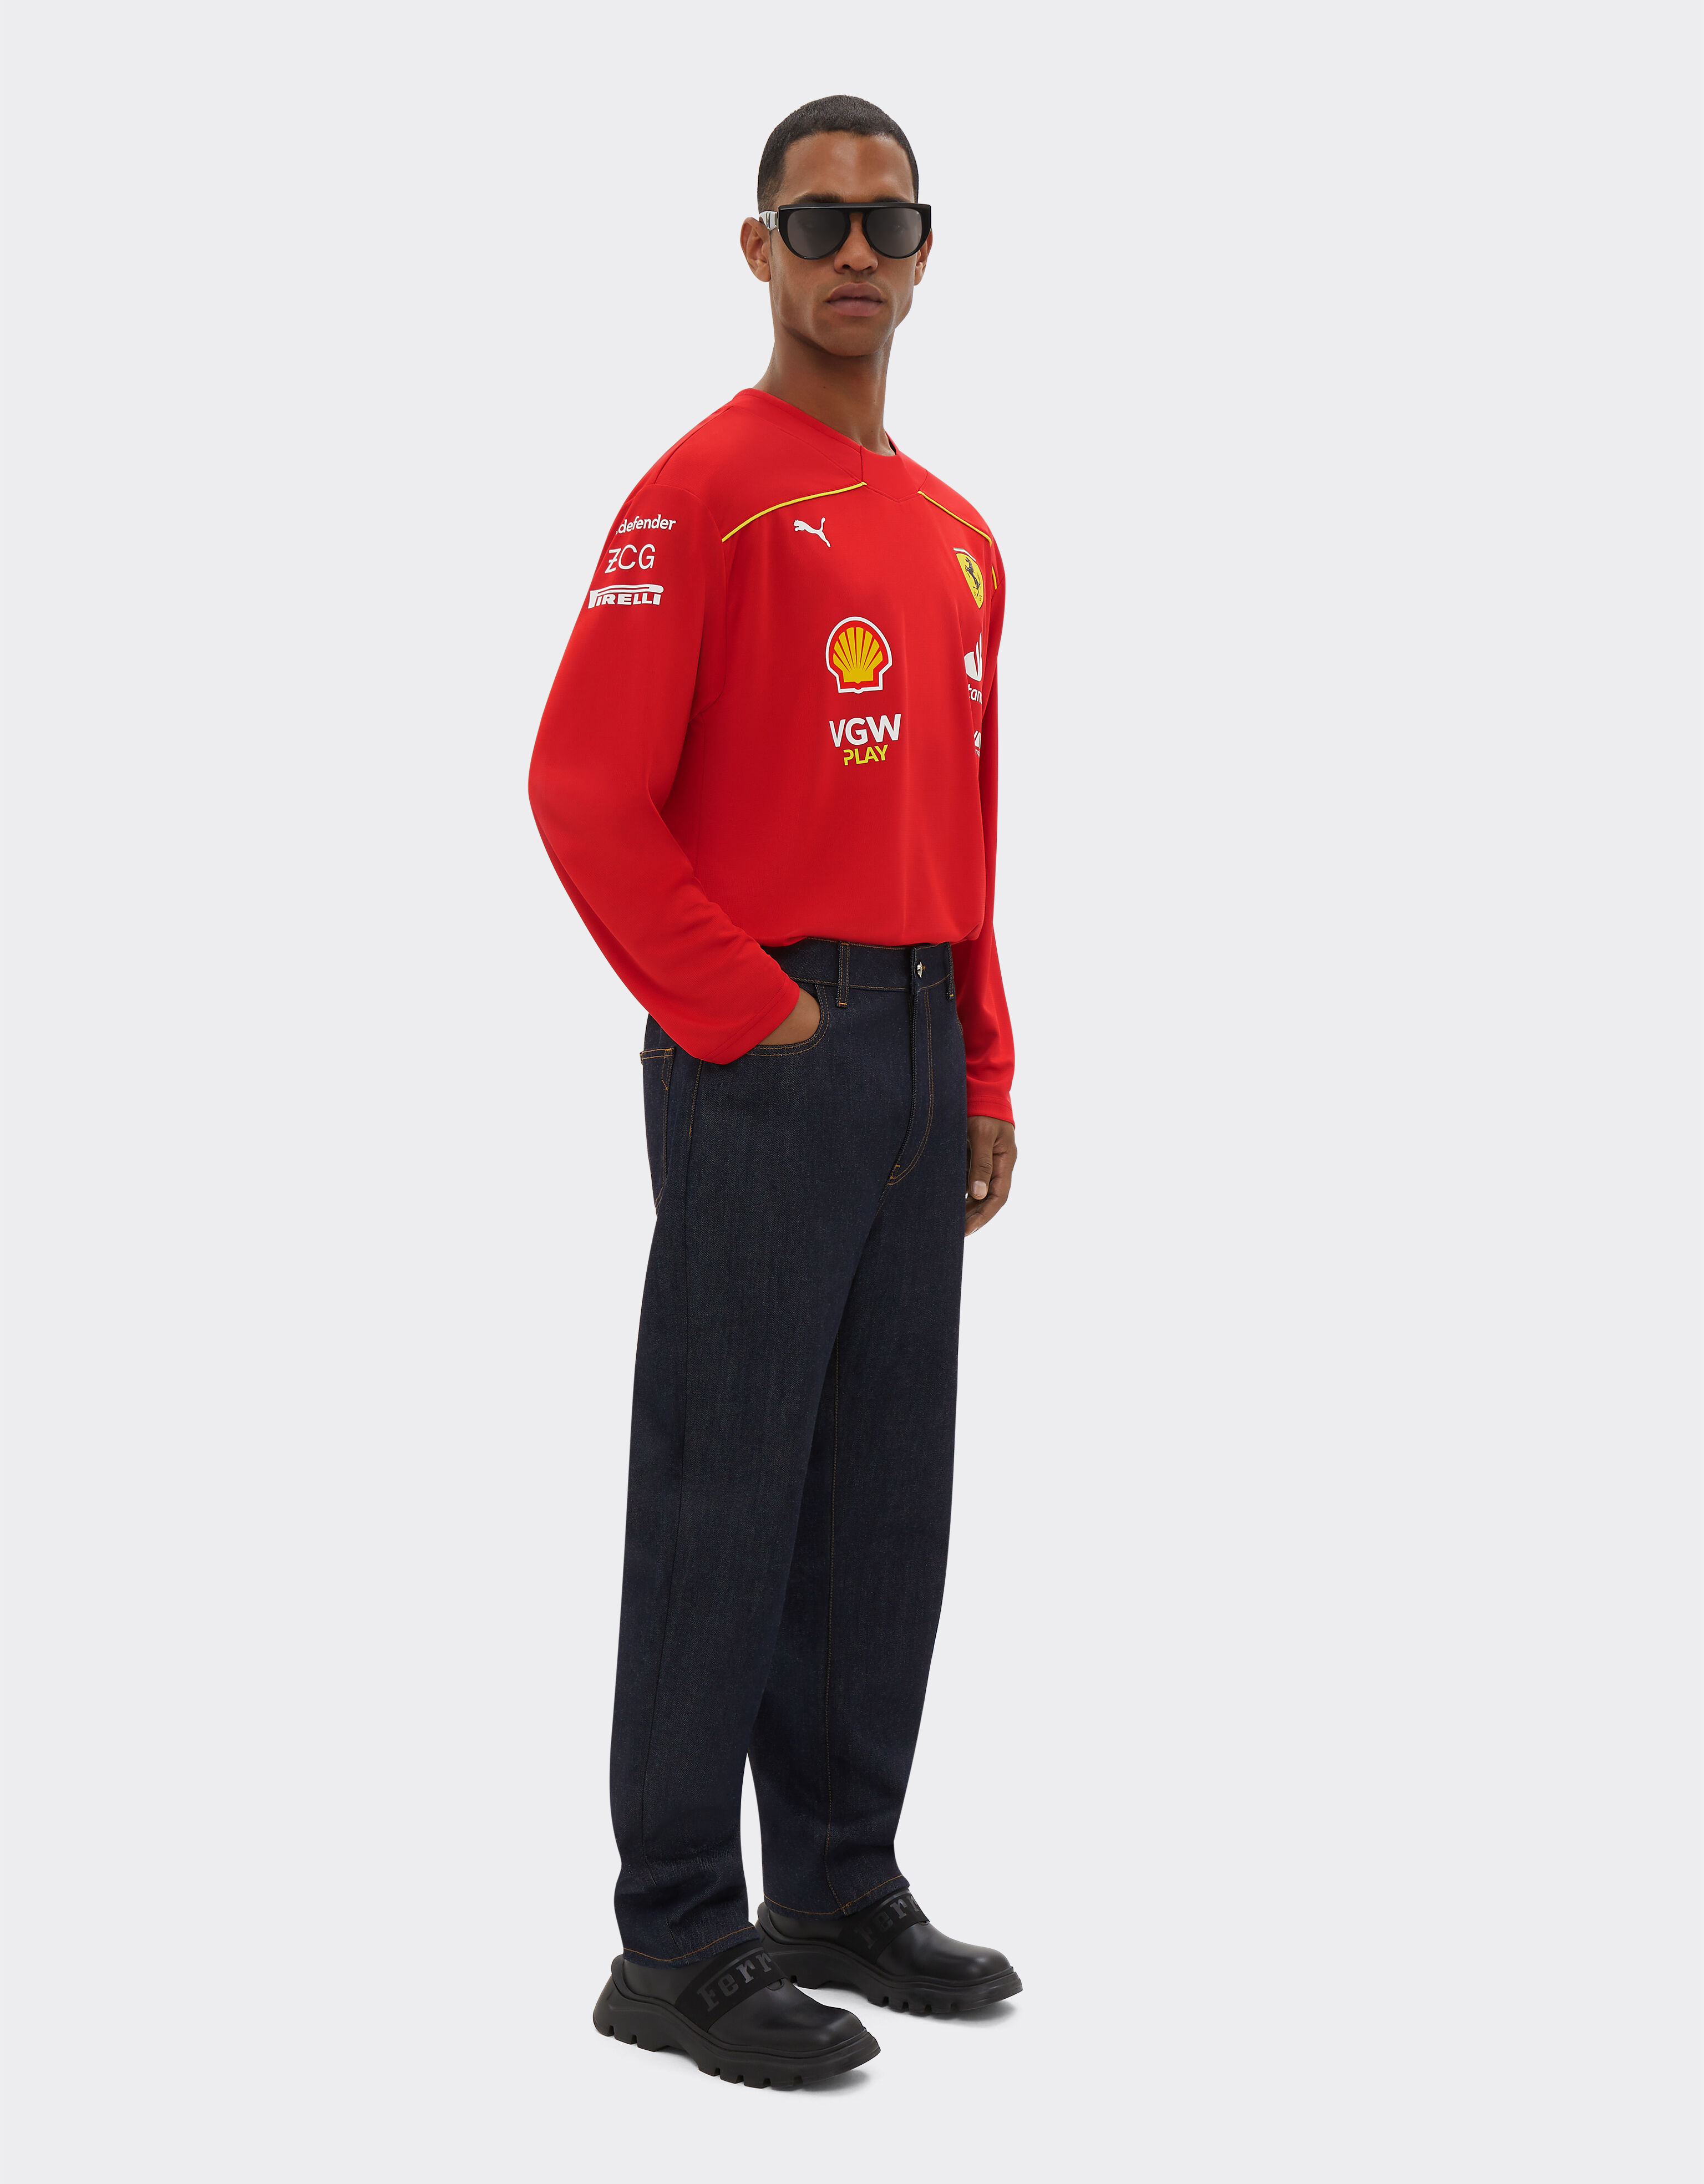 Ferrari スクーデリア・フェラーリのサインツ・ホッケー・ジャージー - カナダ・スペシャル・エディション Rosso Corsa F1337f